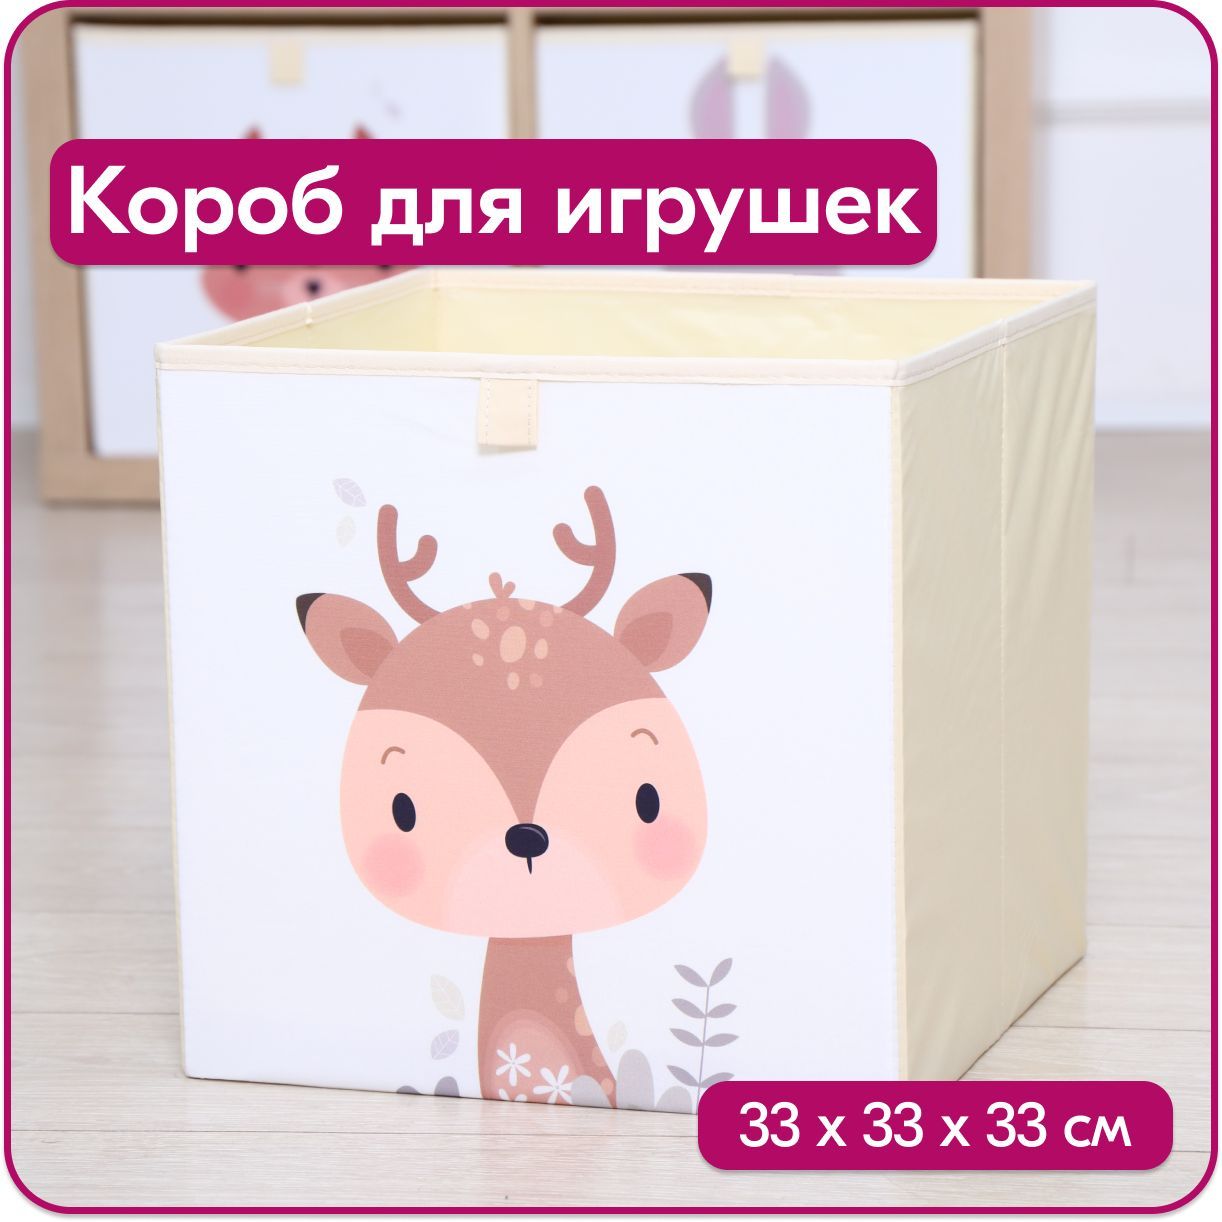 Ящик для игрушек HappySava Олень размер 33x33x33 см объем 35 литров